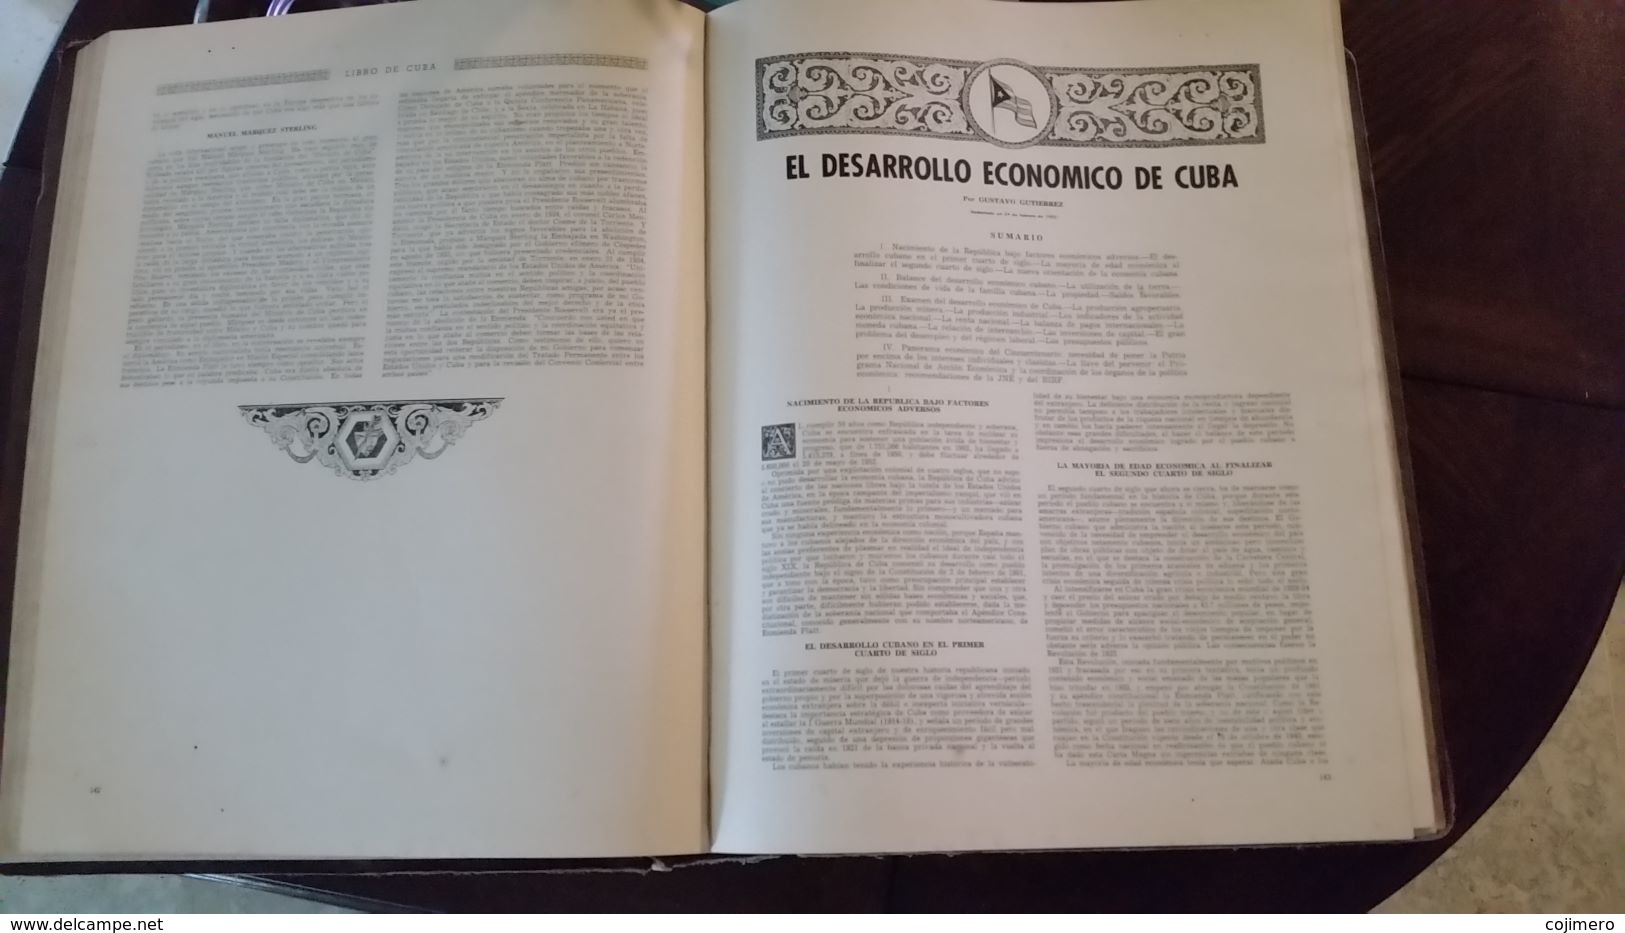 Libro de Cuba - Ilustrado Cincuentenario de la Republica 1953 Original - Marti